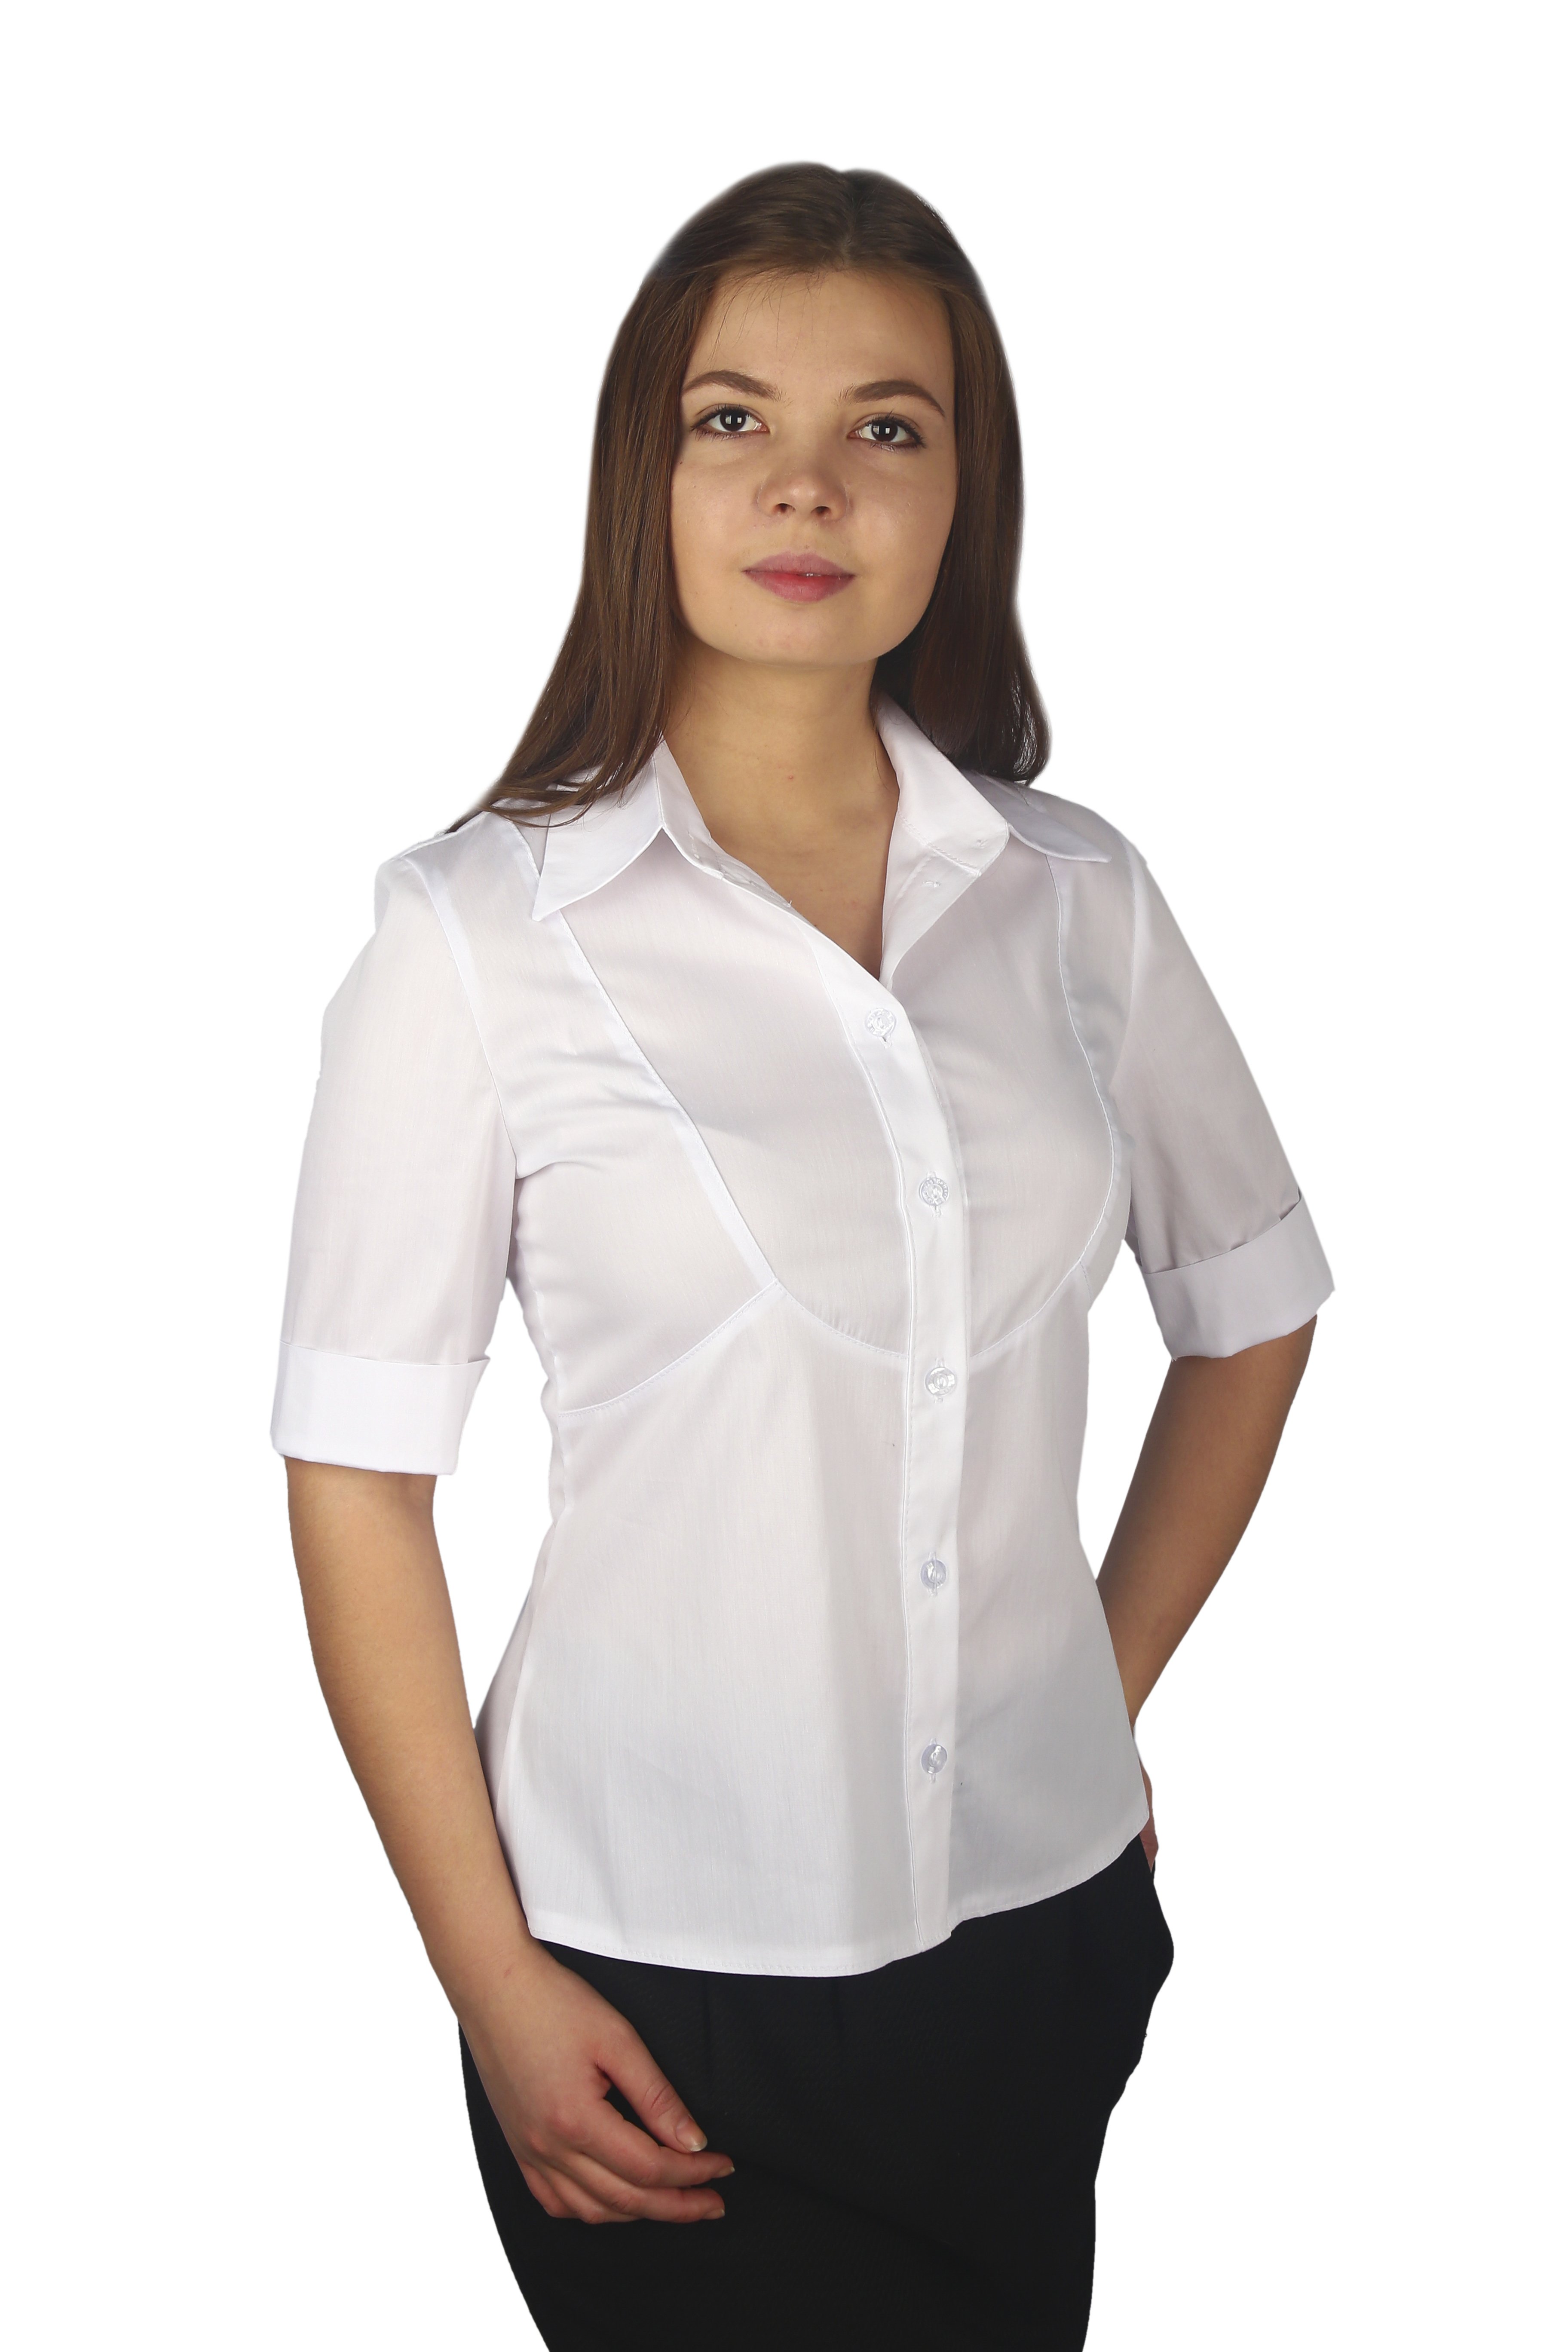 Женские блузки производство. Блузка женская. Белая блузка. Белая блузка женская. Белая рубашка женская.